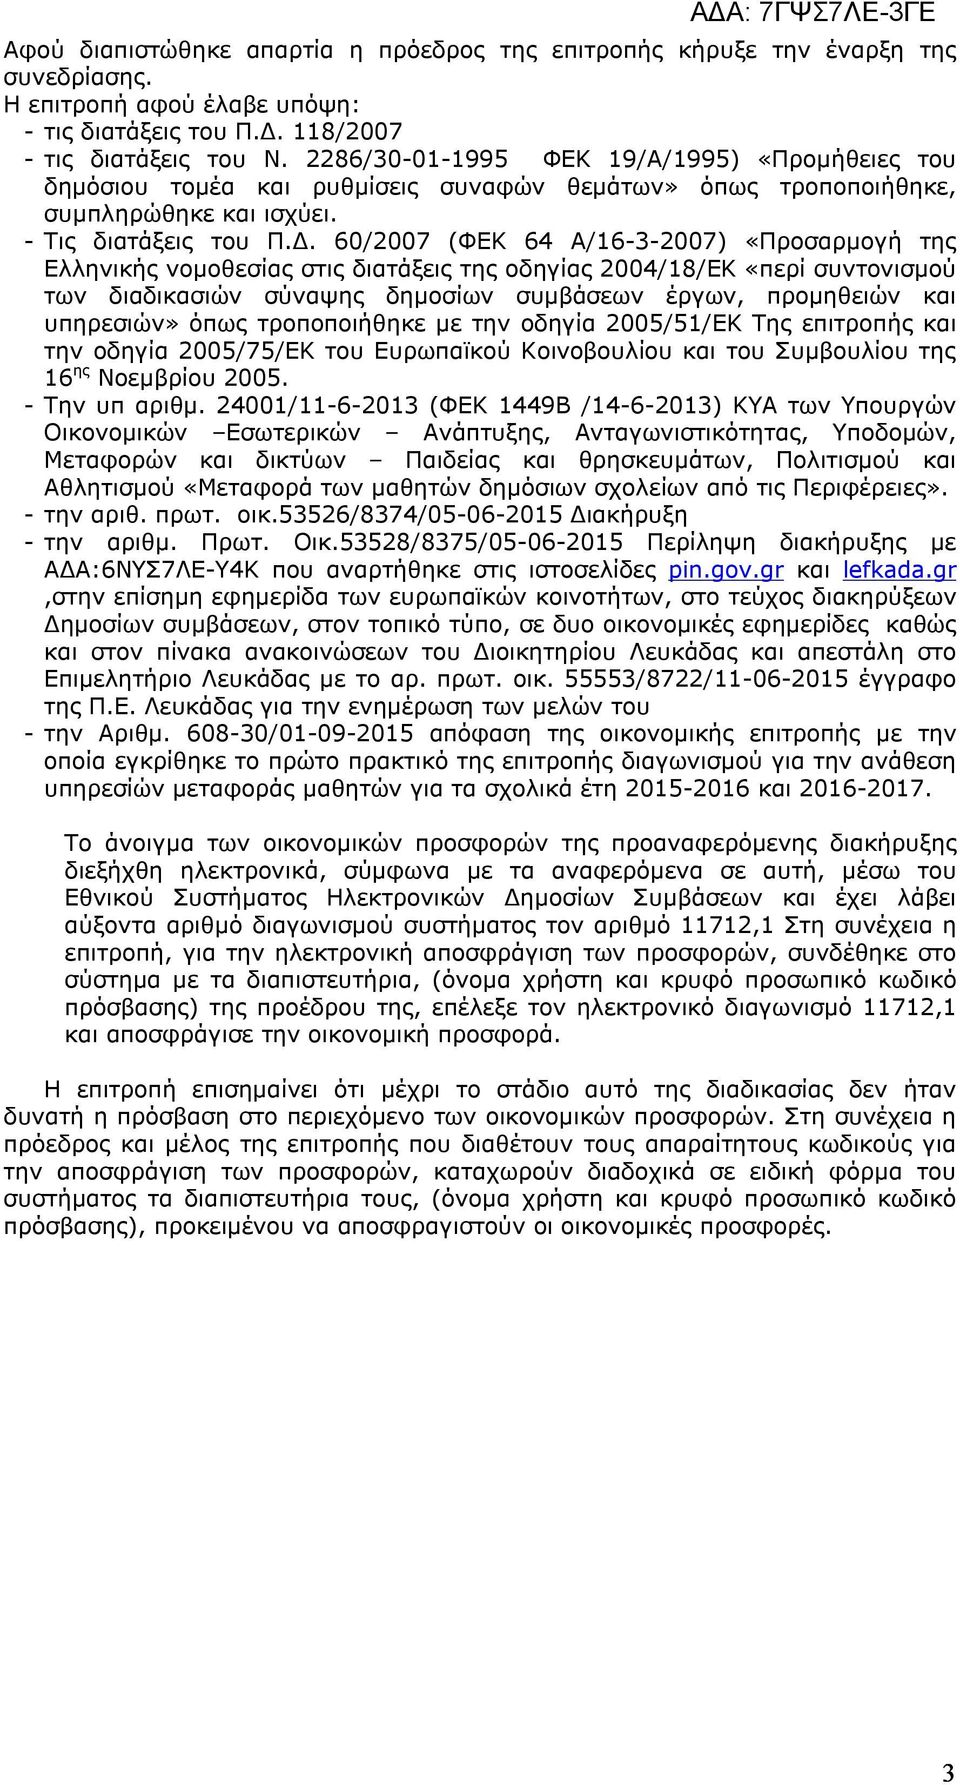 60/2007 (ΦΕΚ 64 Α/16-3-2007) «Προσαρμογή της Ελληνικής νομοθεσίας στις διατάξεις της οδηγίας 2004/18/ΕΚ «περί συντονισμού των διαδικασιών σύναψης δημοσίων συμβάσεων έργων, προμηθειών και υπηρεσιών»